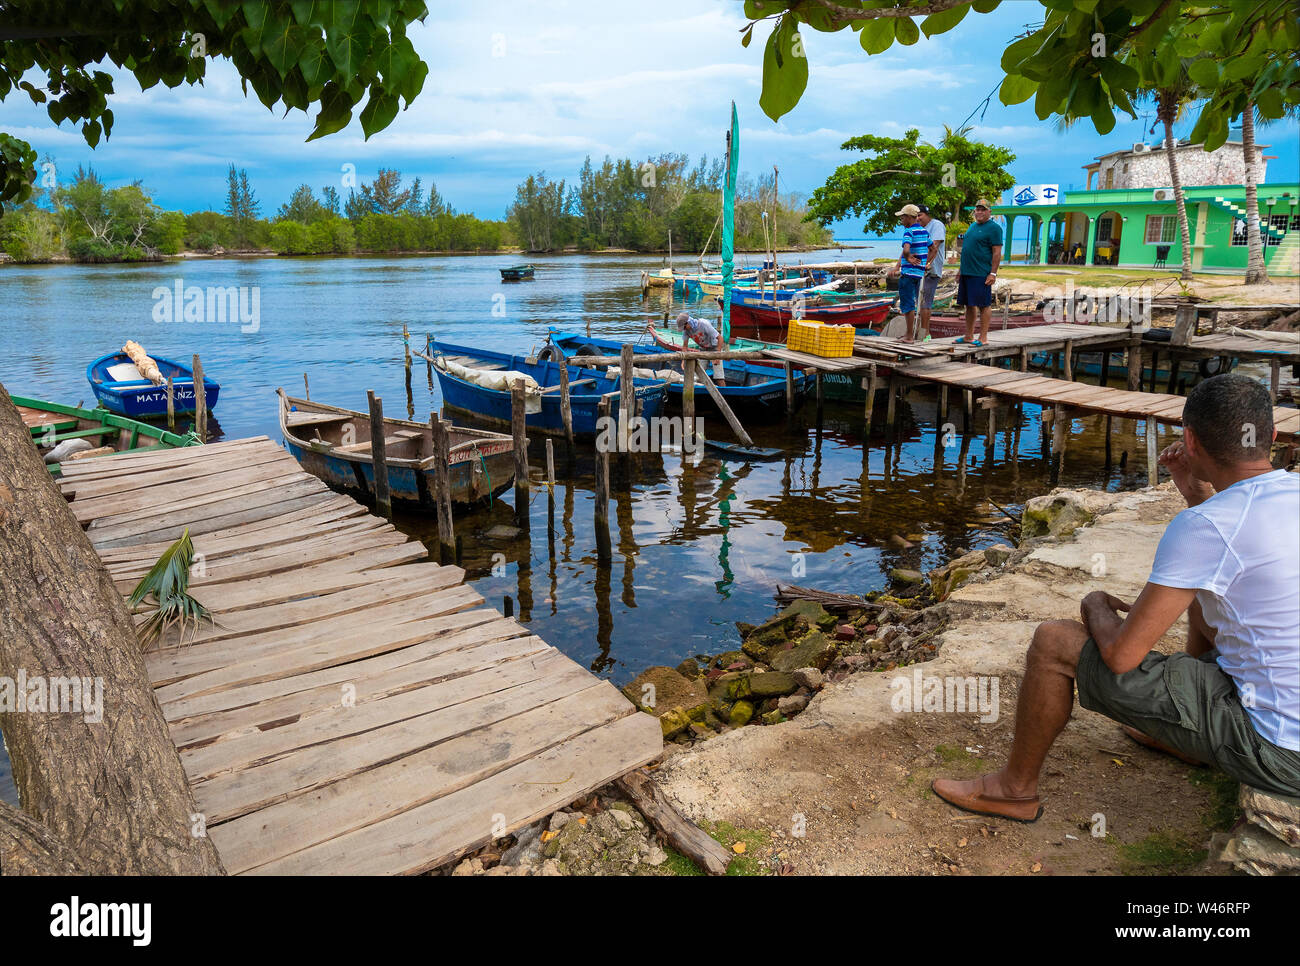 Les pêcheurs de la maison de vacances et village de pêcheurs de Caleton sur la Baie des cochons qui a de nombreuses casas détails province de Matanzas, Cuba Banque D'Images